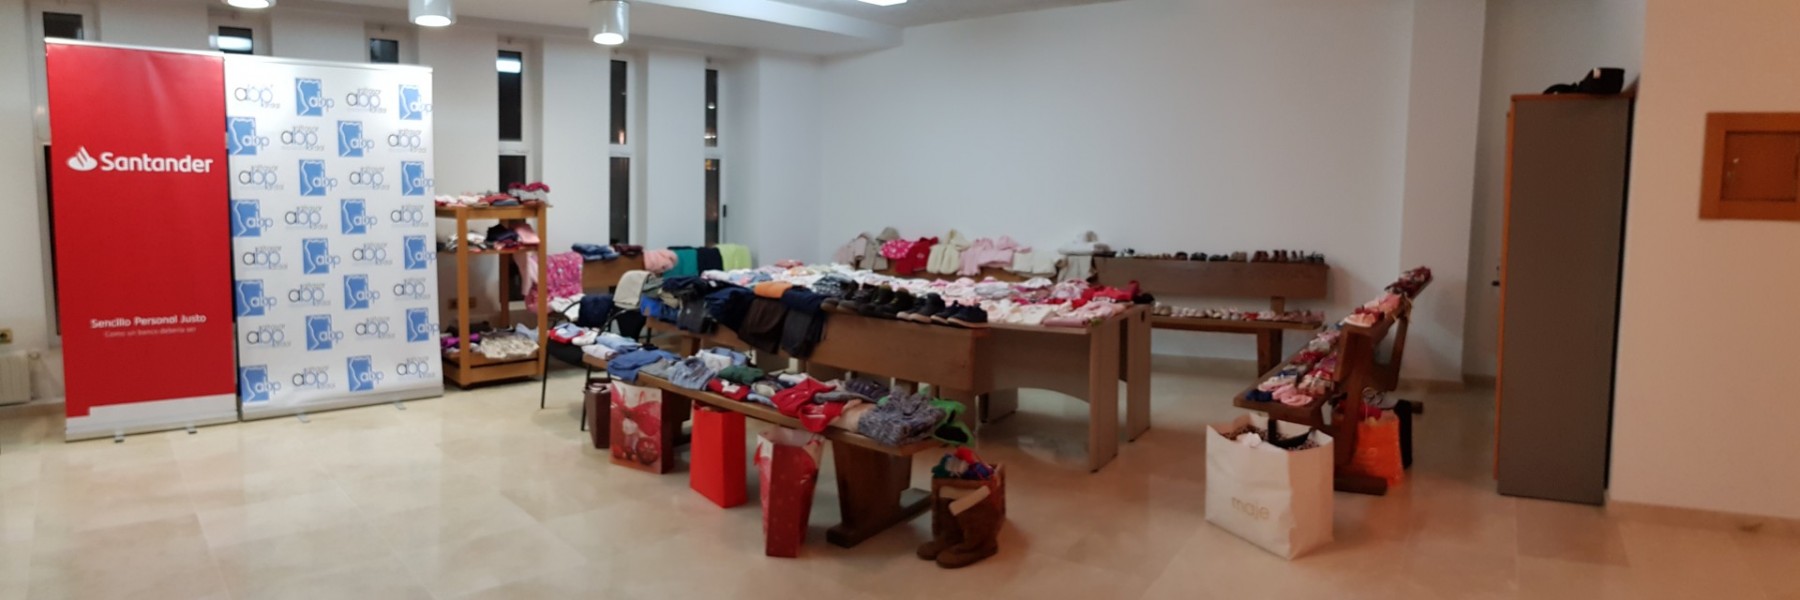 donacion-ropa-banco-santander-4